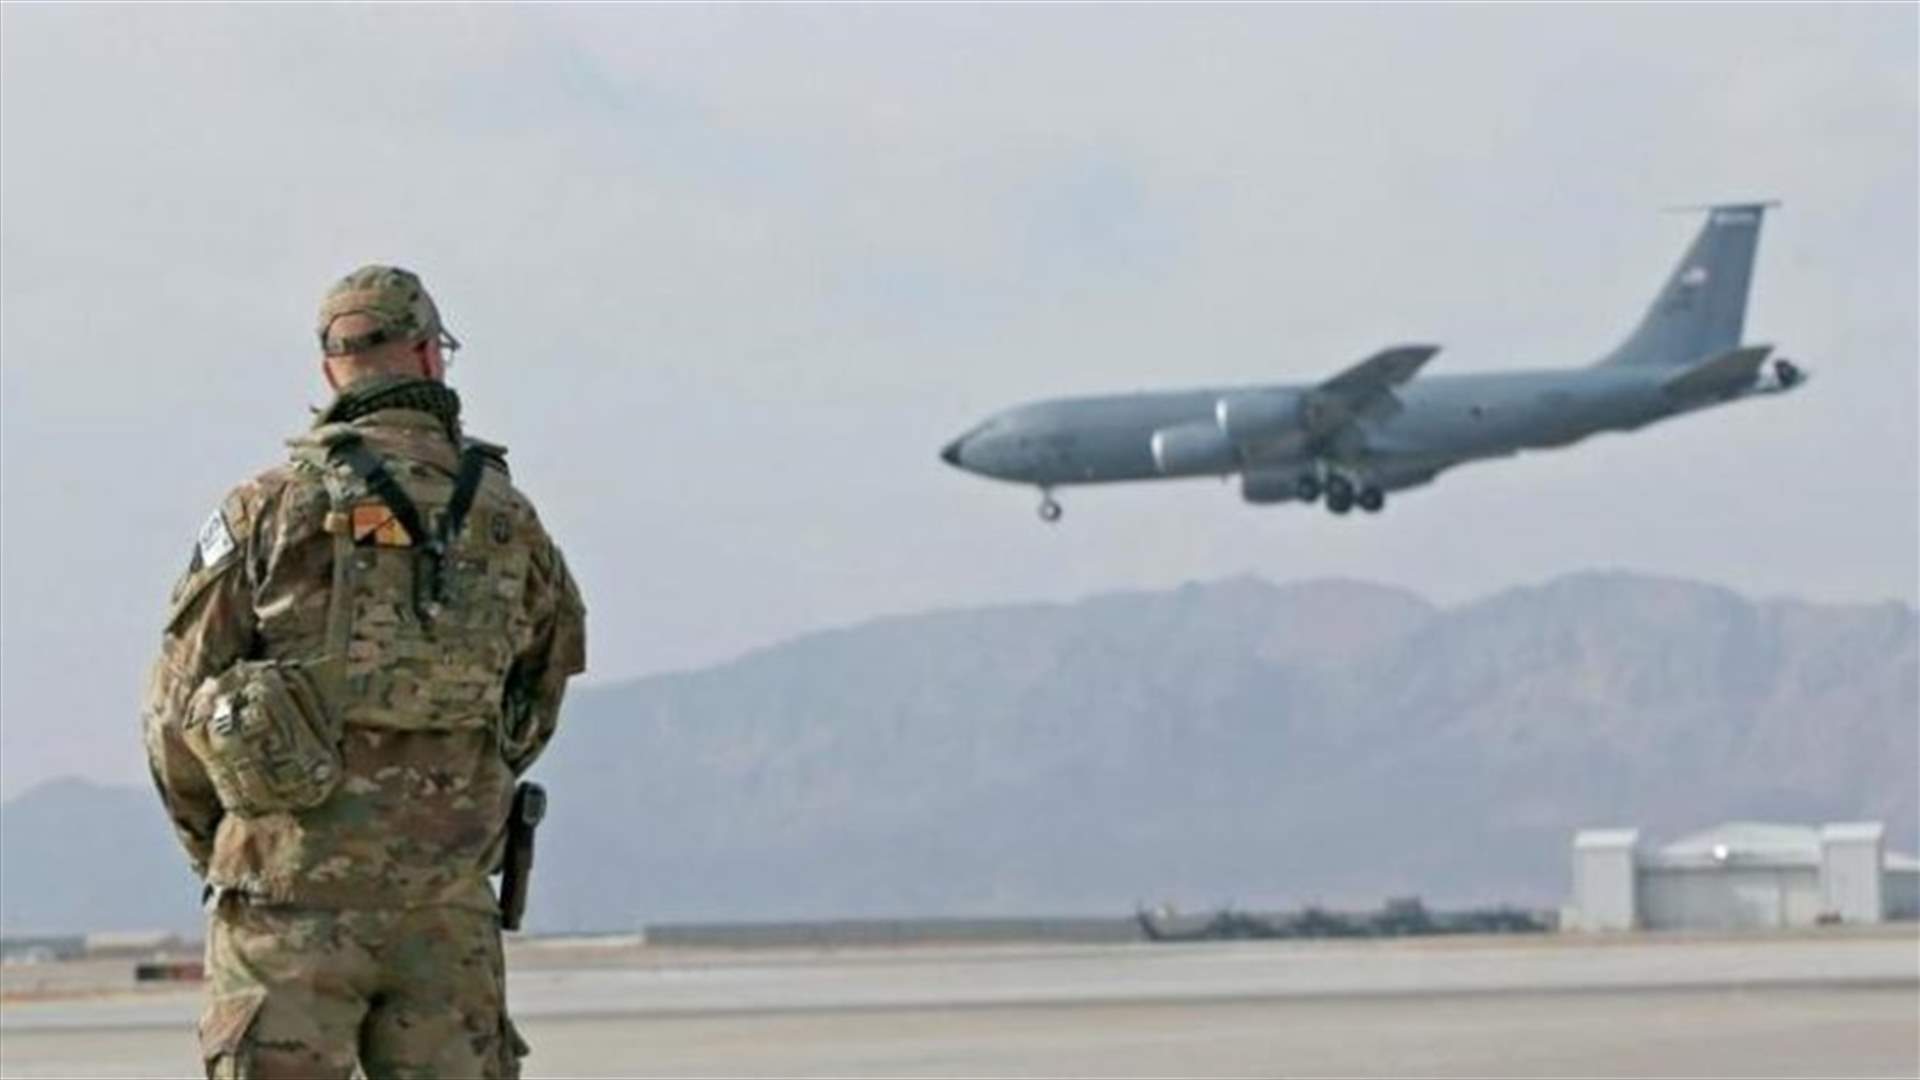 سقوط صواريخ على قاعدة أميركية في أفغانستان... وداعش يتبنى